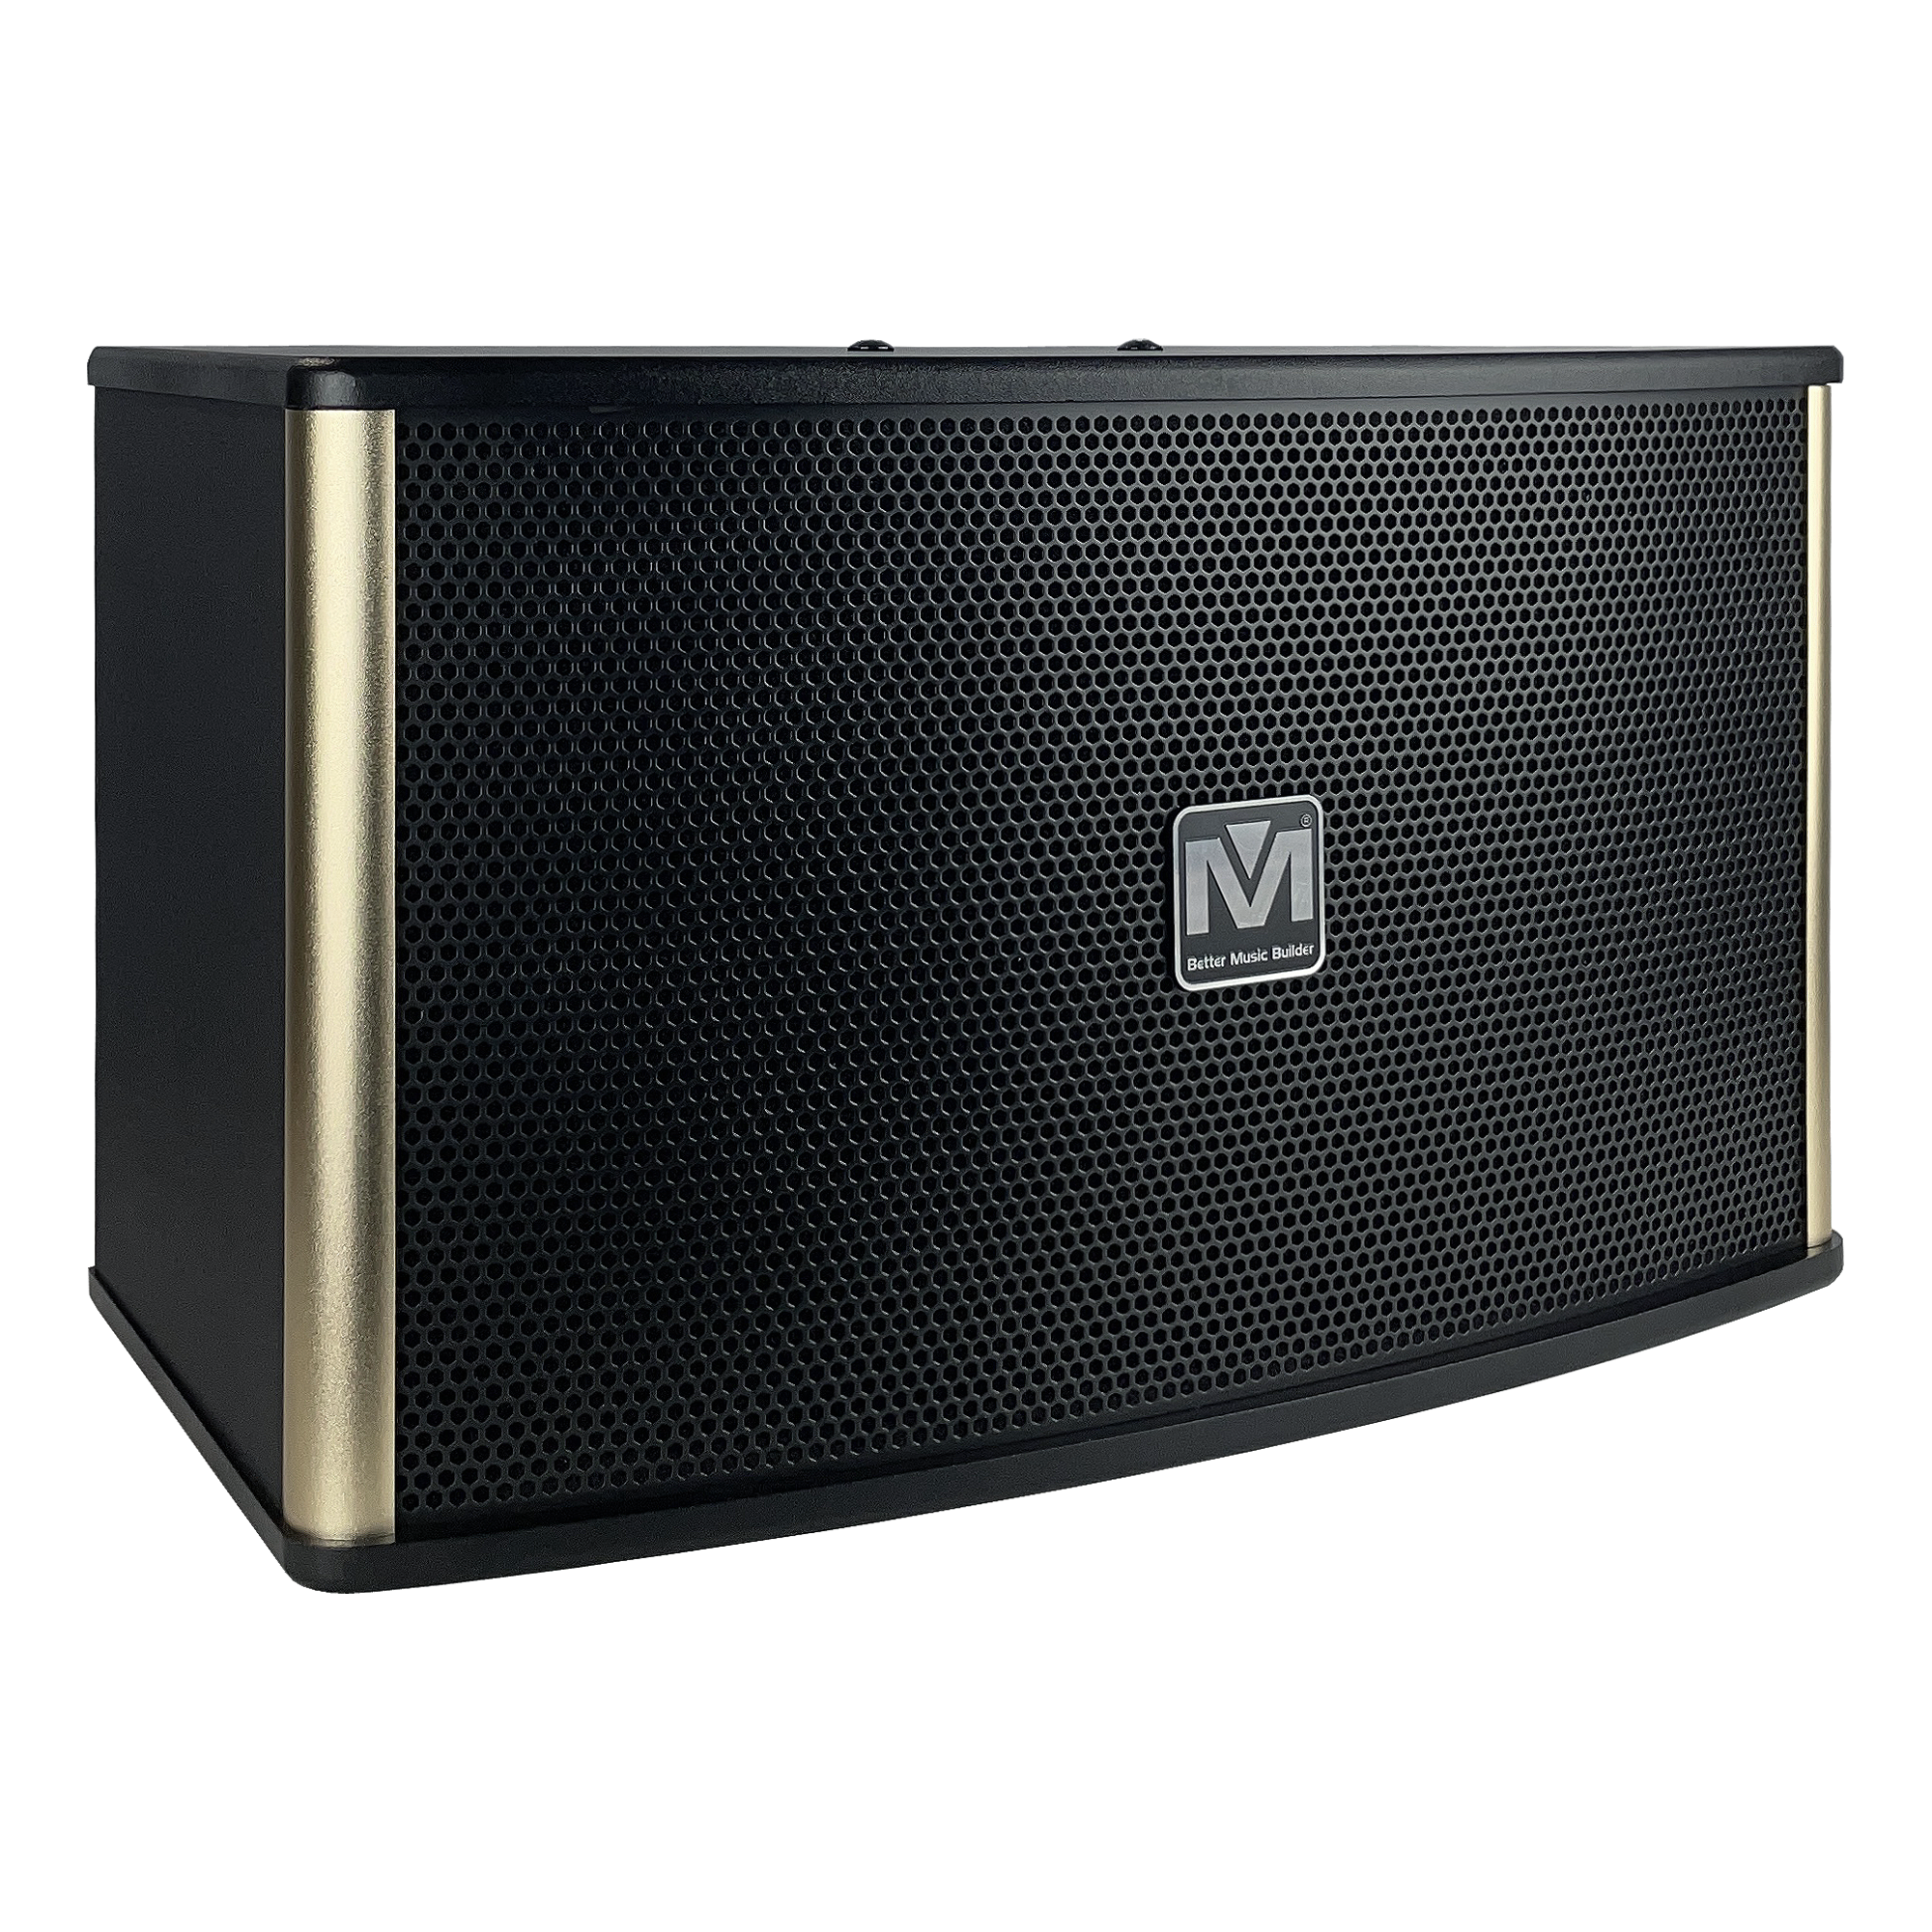 Better Music Builder CS-610 G5 Pro 600 Watts Karaoke Vocal Speakers